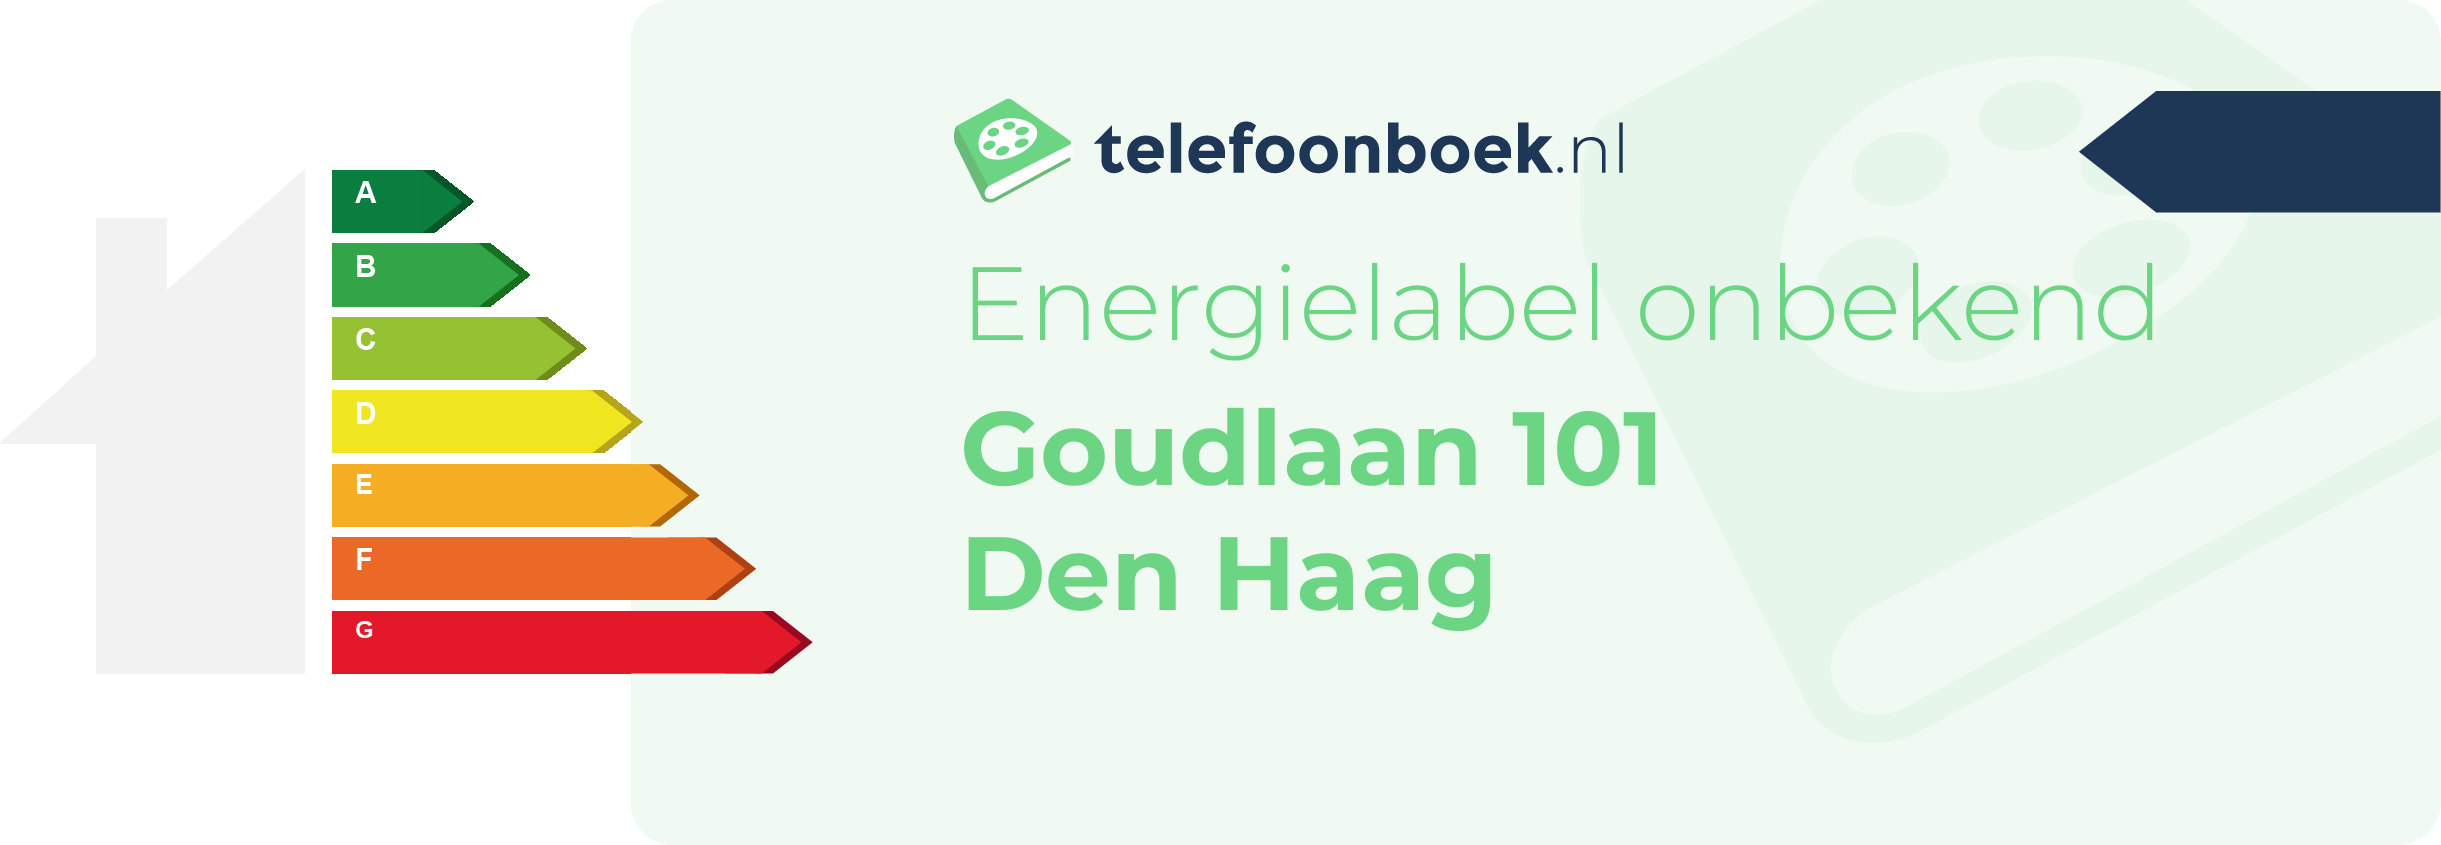 Energielabel Goudlaan 101 Den Haag